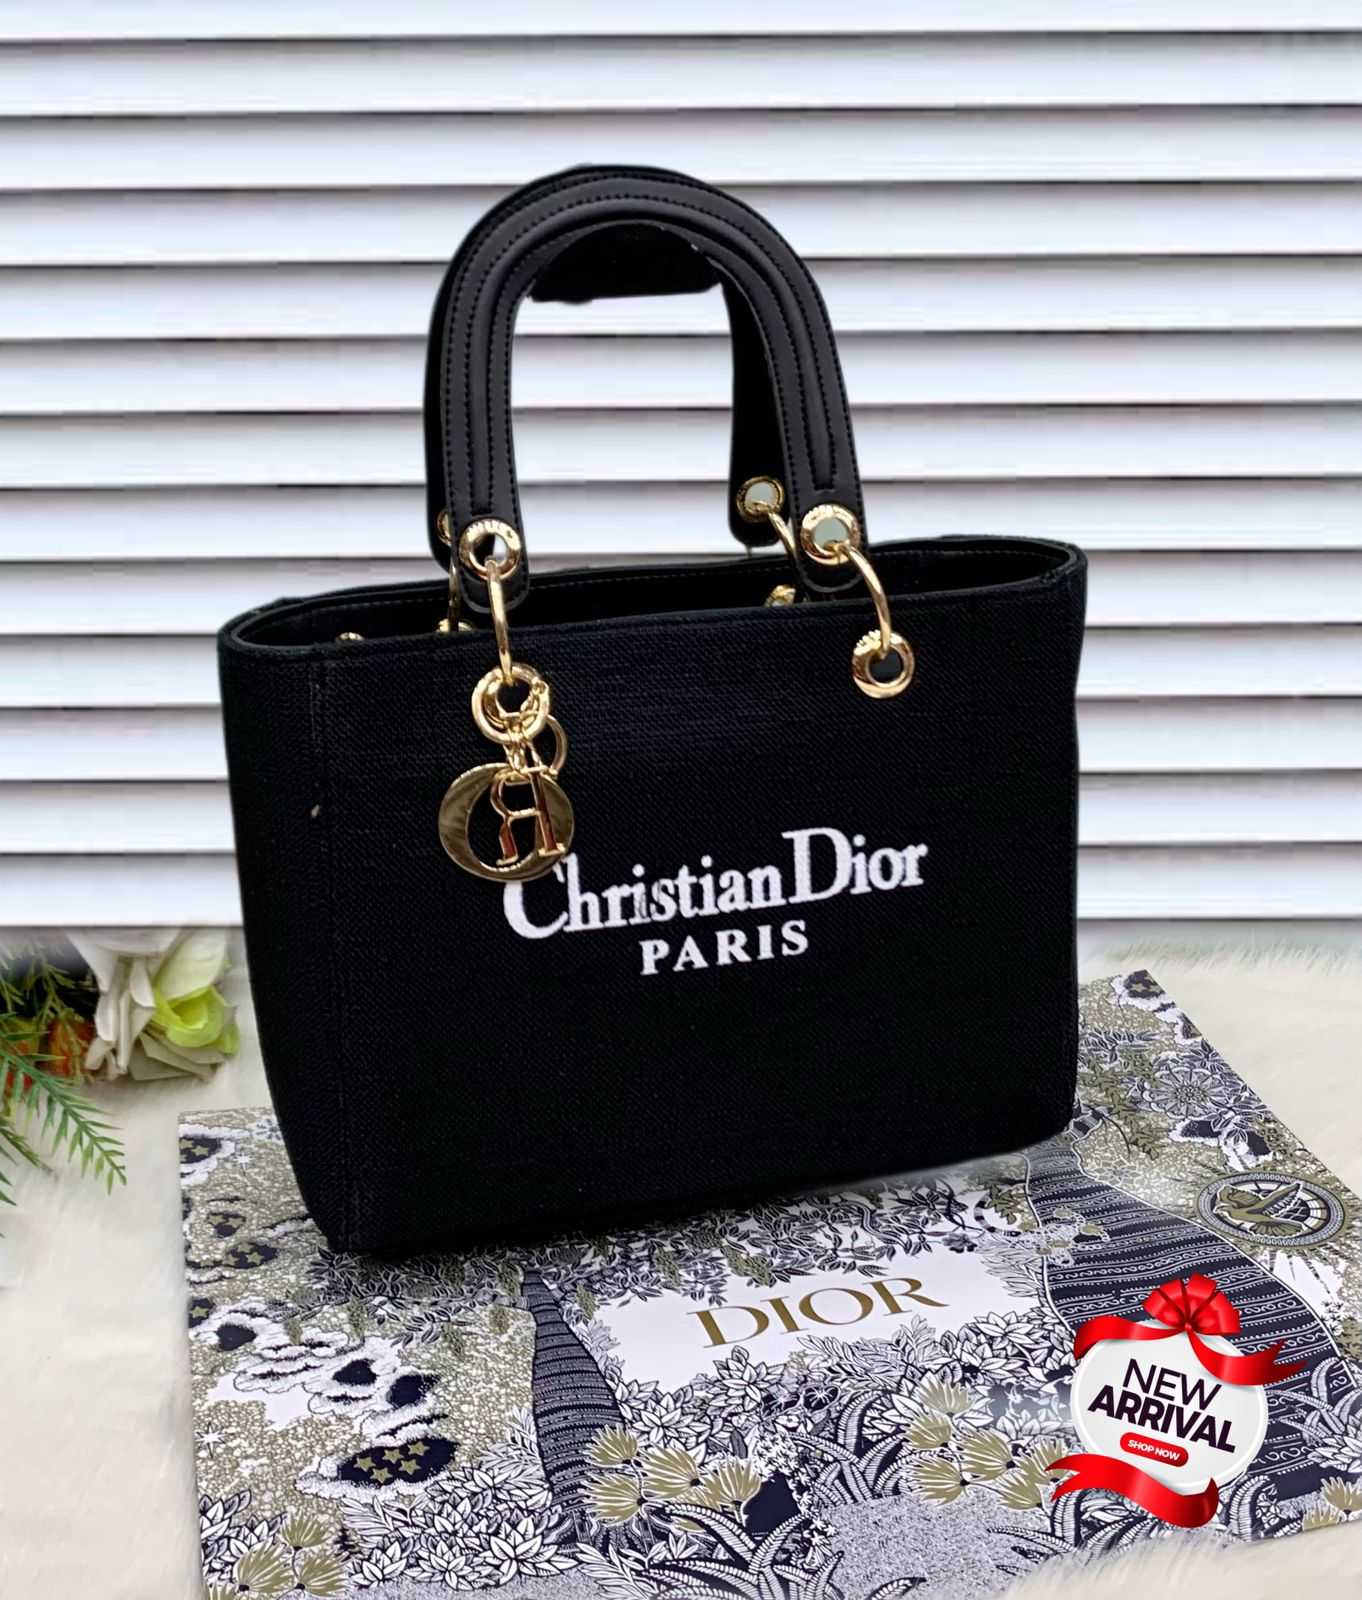 Christian Dior Paris hand bag